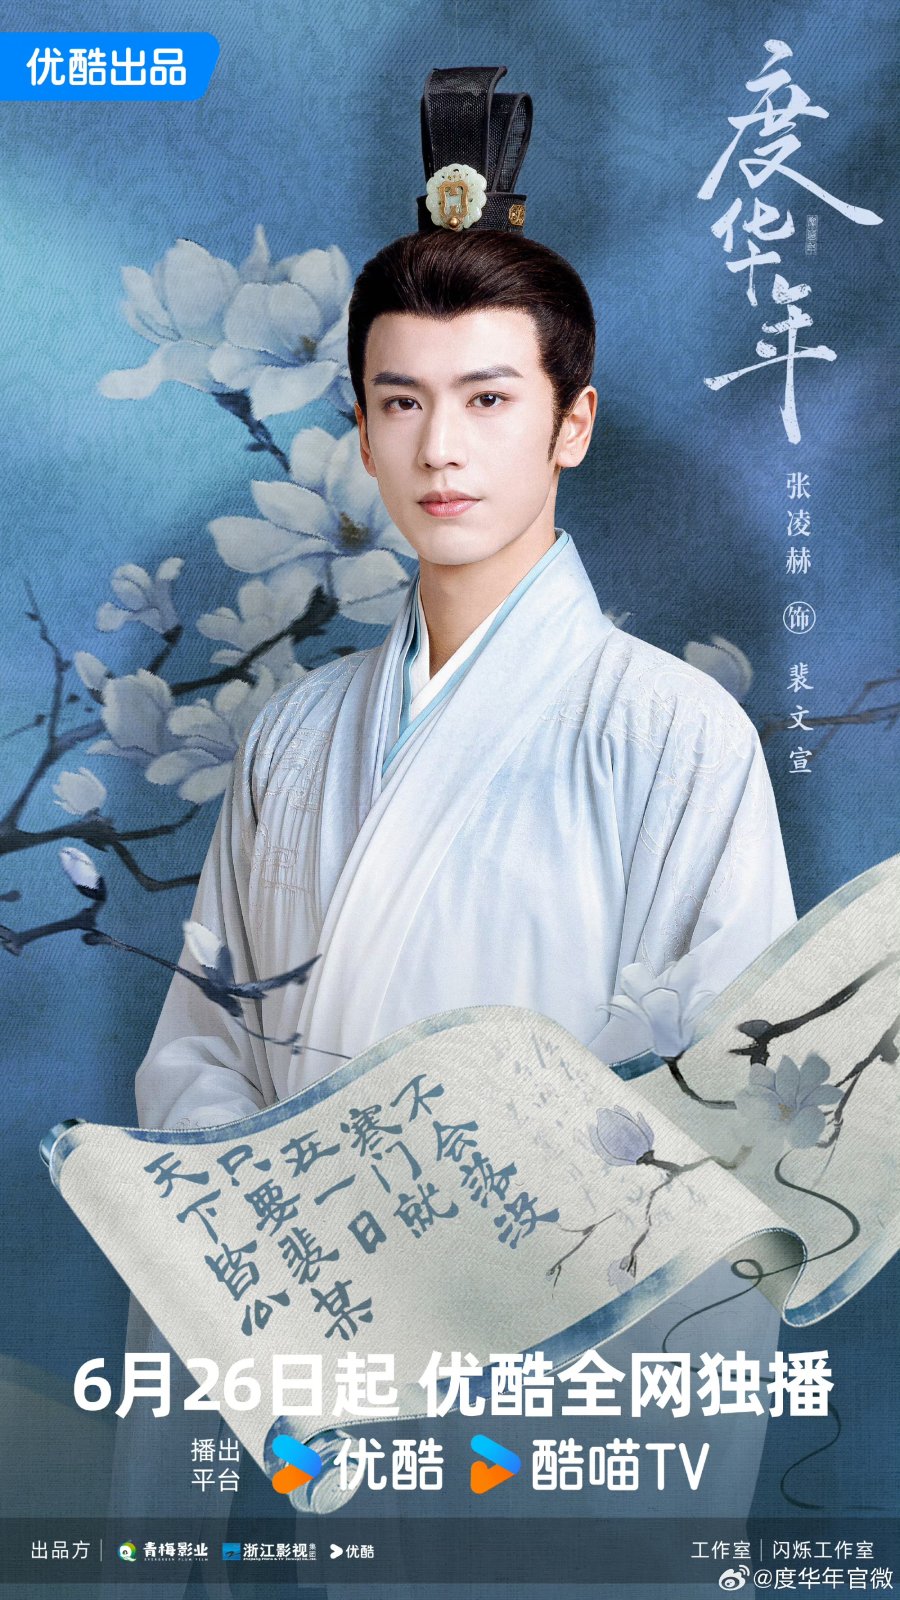 Премьера дорамы с Чжан Лин Хэ и Чжао Цзинь Май «Великая принцесса»